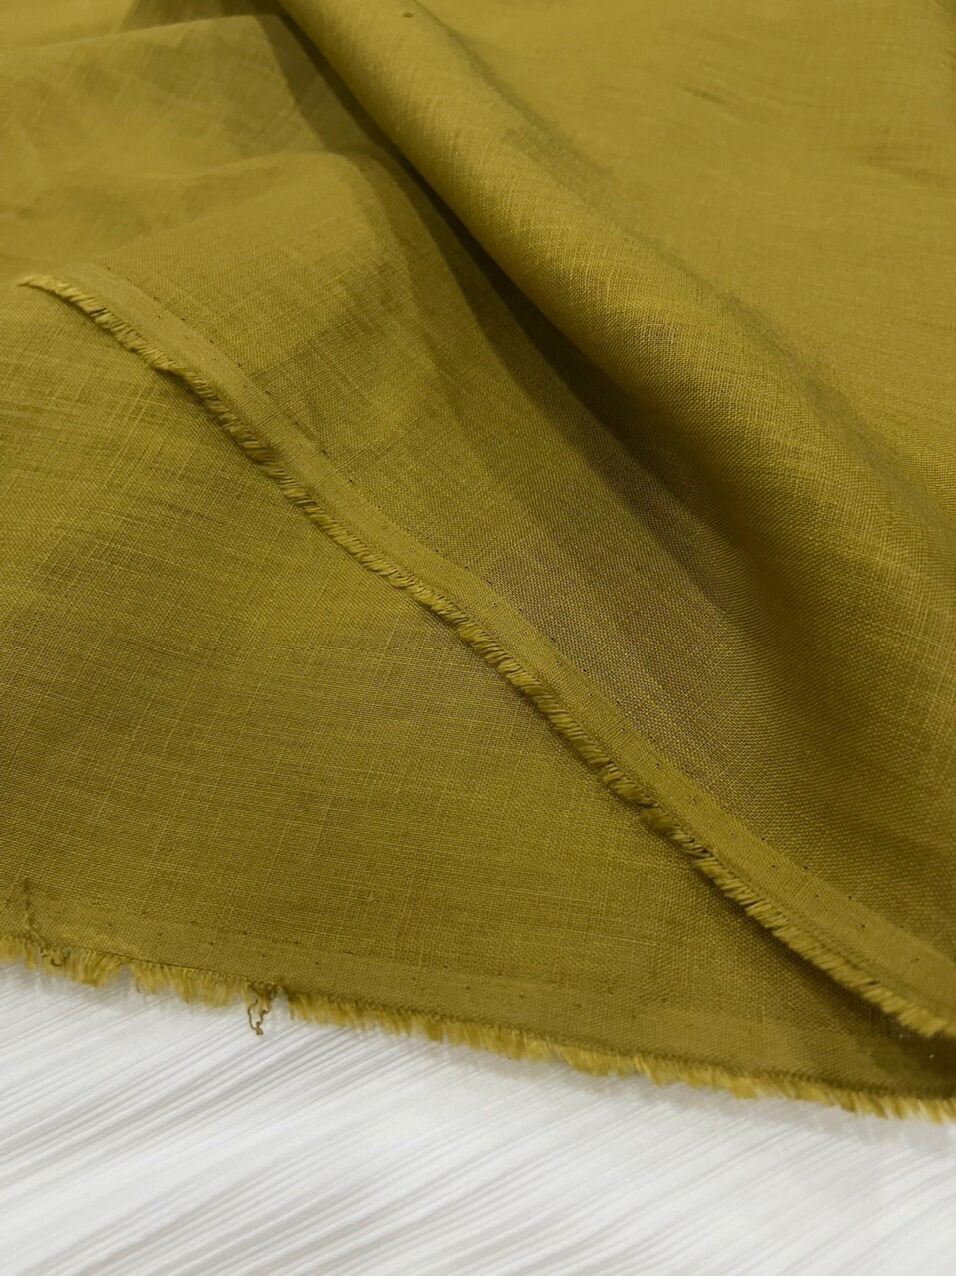 [HCM] Vải Linen Tưng Premium Nhiều màu sang xịn mịn - khổ 1m40 (1mx1m40) may đầm set bộ ko cần lót